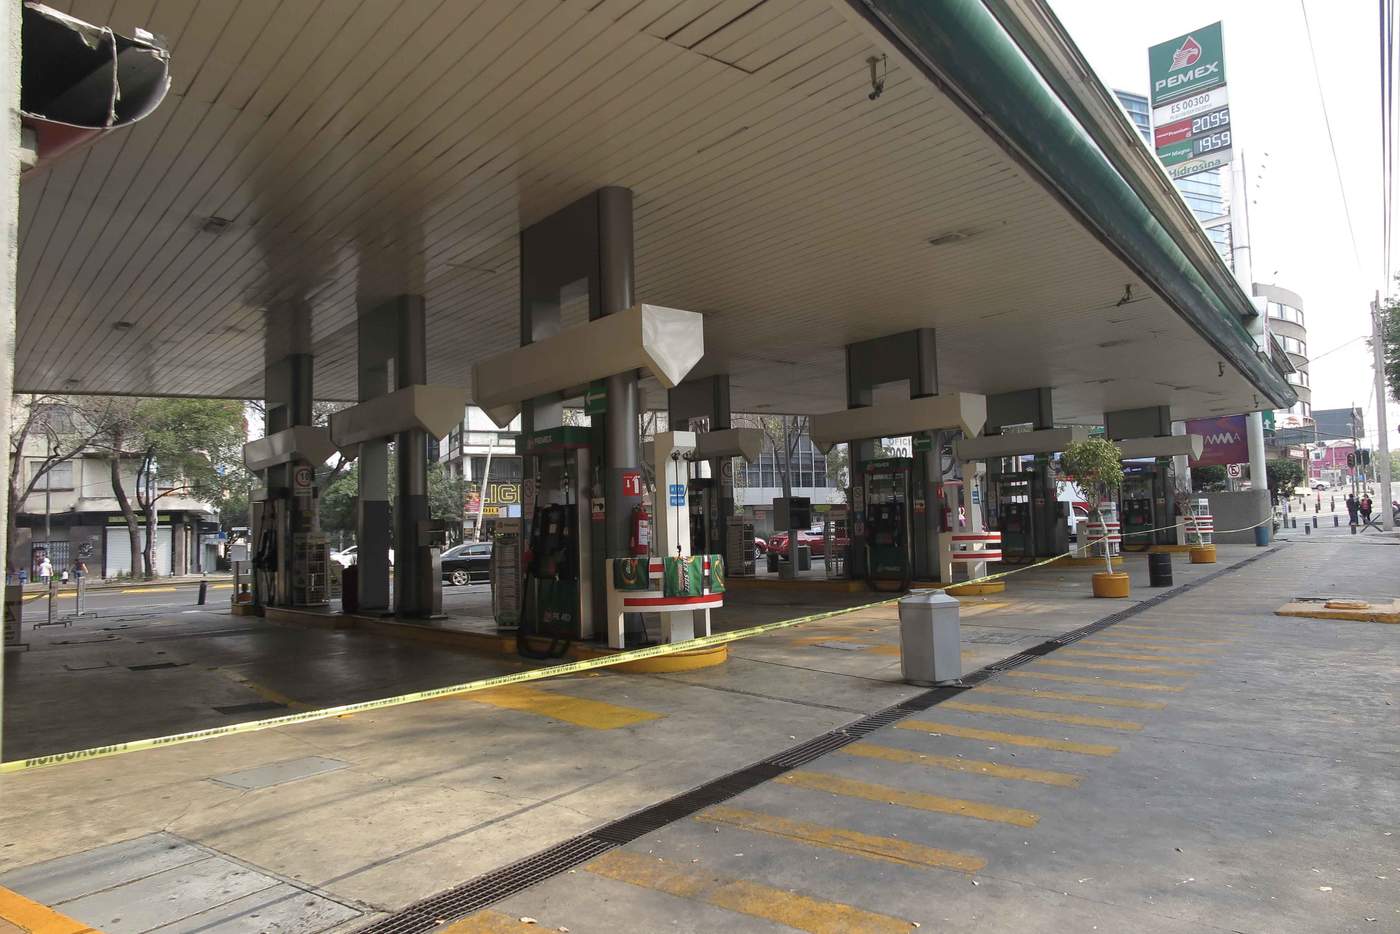 El desabastecimiento de combustibles que sufren varios estados mexicanos alcanzó la zona metropolitana de Monterrey, uno de los polos industriales del país, por el traslado de camiones cisterna desde Nuevo León al centro del país, informaron hoy fuentes oficiales. (ARCHIVO)